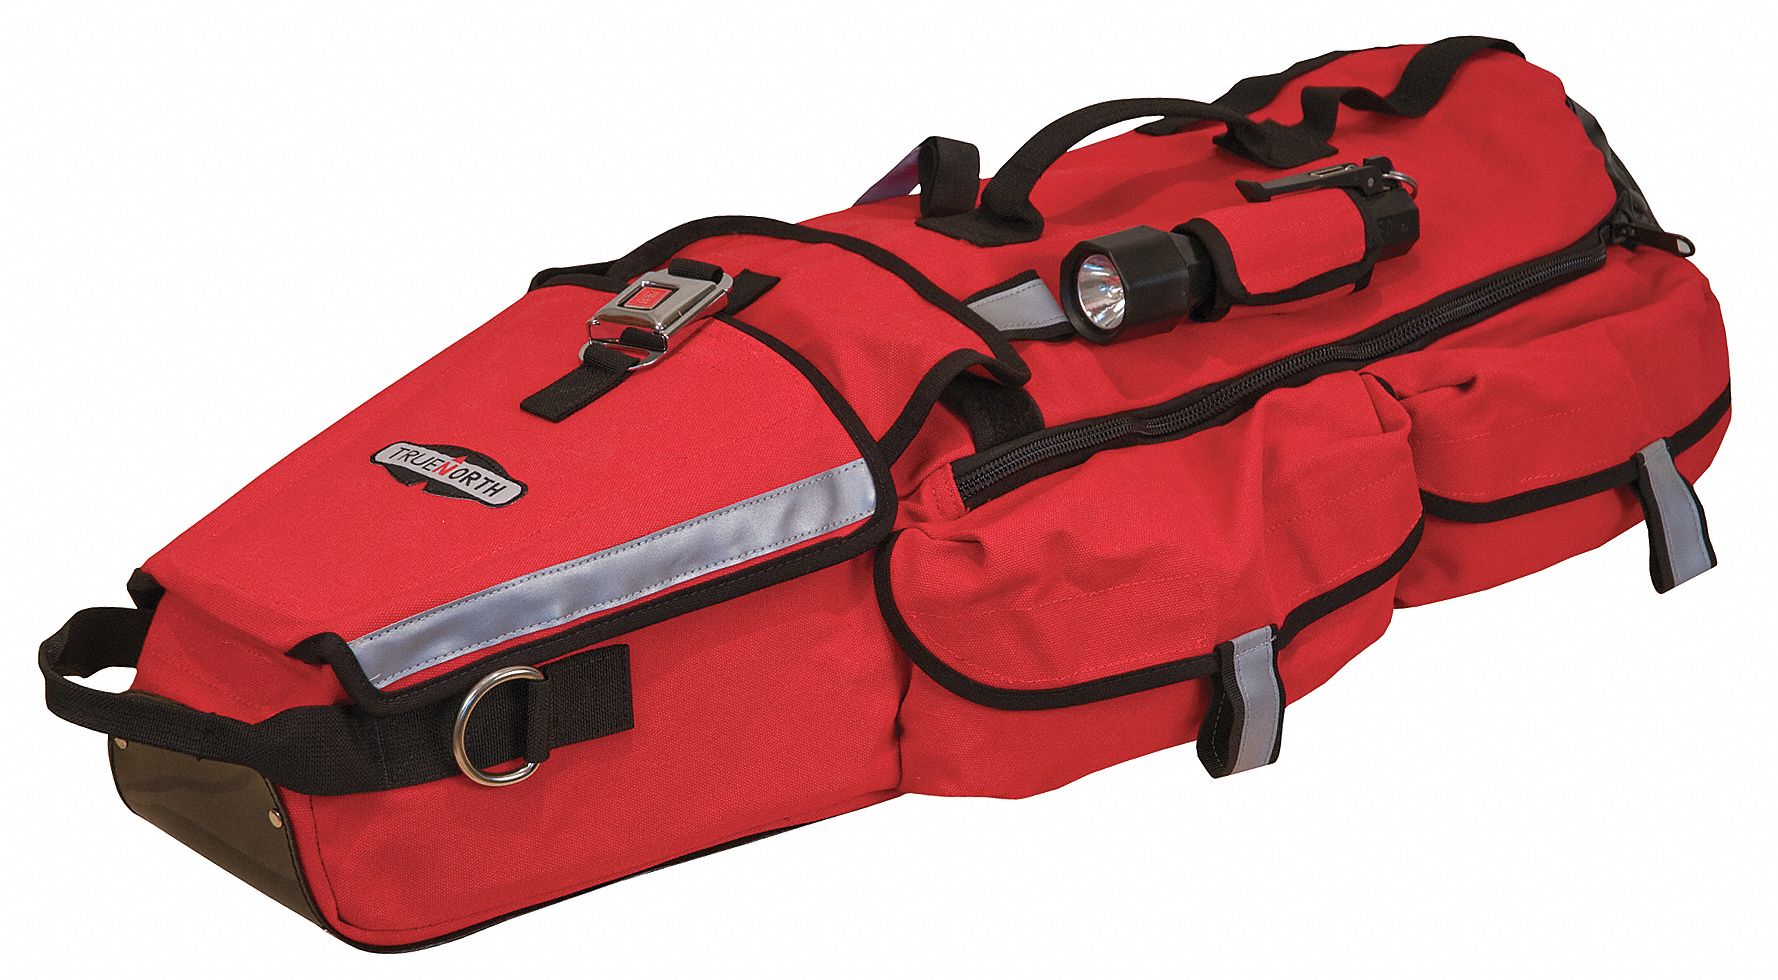 Gear Bag: Hi-Viz Red, 13 in Wd, 10 in Dp, 36 in Ht, 2 Pockets, Nylon